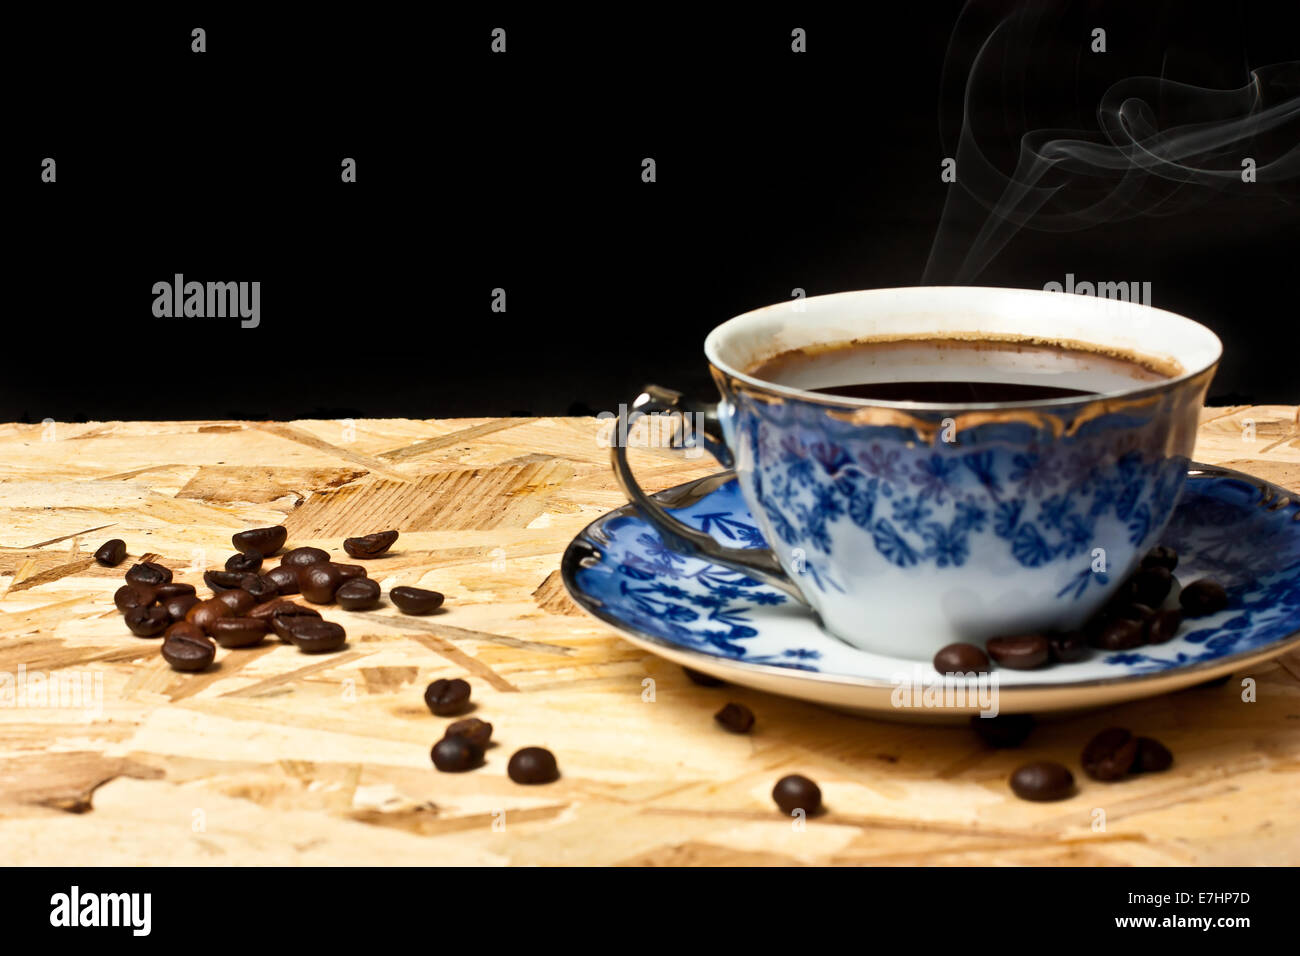 Une tasse de café et des haricots sur une table en bois avec fond noir Banque D'Images